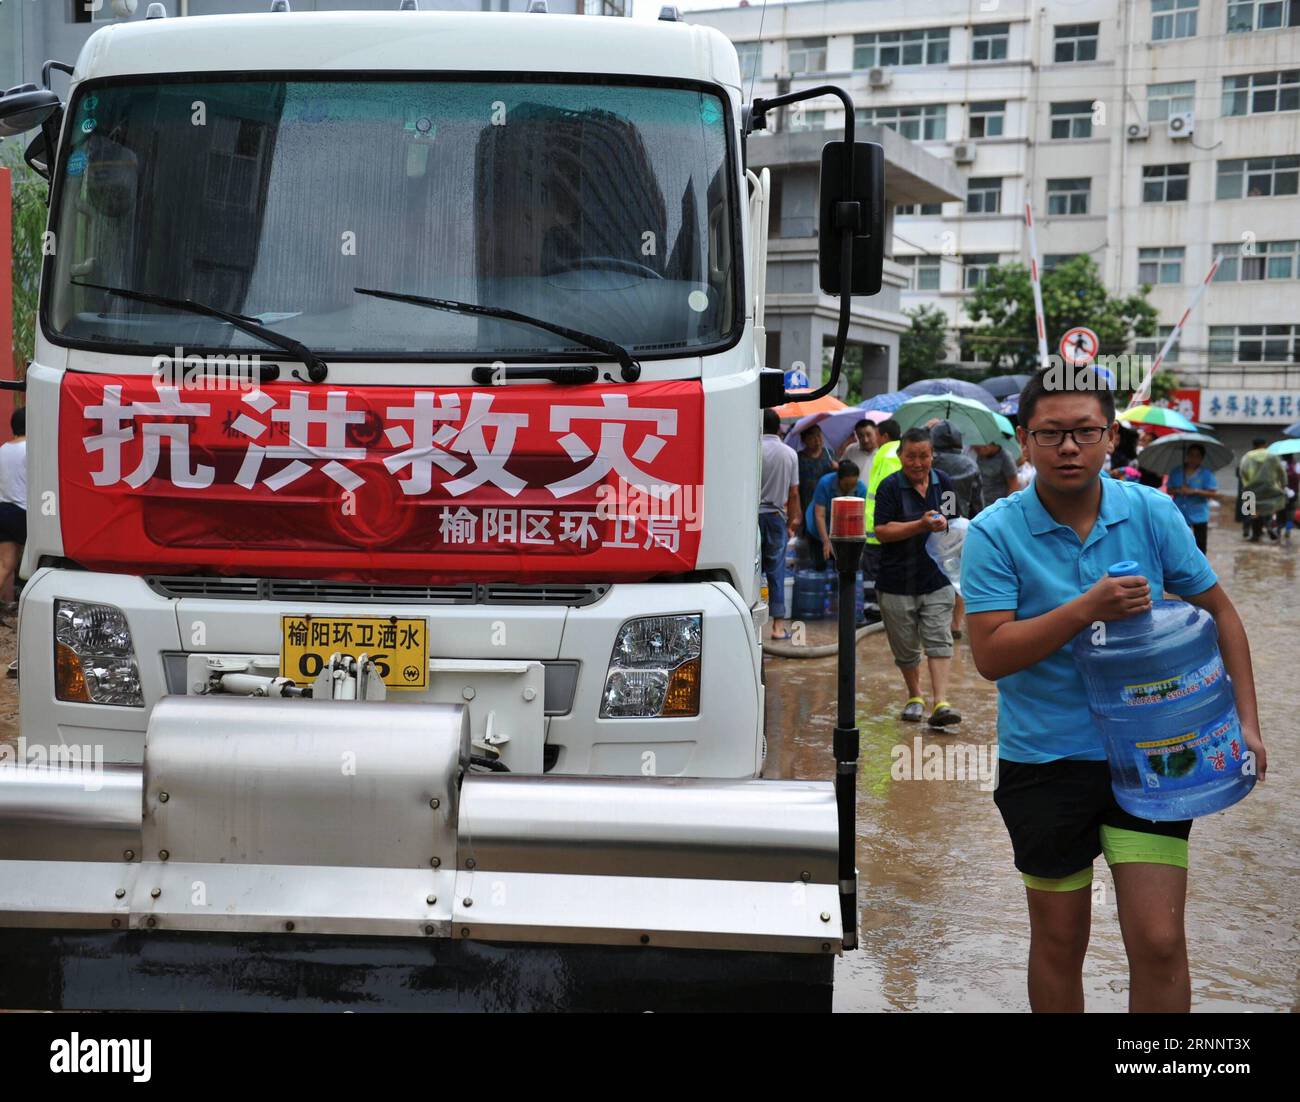 (170727) -- YULIN, 27 juillet 2017 -- Un homme reçoit un pot d'eau potable d'une station de distribution d'eau dans le comté de Suide de la ville de Yulin, dans la province du Shaanxi au nord-ouest de la Chine, le 27 juillet 2017. Les travaux de sauvetage se poursuivent dans les comtés de Suide et Zizhou les plus touchés après une pluie torrentielle qui a provoqué une inondation dans la ville. (clq) CHINA-SHAANXI-YULIN-FLOOD-RESCUE(CN) ZhangxBowen PUBLICATIONxNOTxINxCHN Yulin juillet 27 2017 un homme REÇOIT un pot d'eau potable d'une station de distribution d'eau dans le comté de suid City Nord-Ouest de la Chine S Shaanxi province juillet 27 2017 le travail de sauvetage se poursuit dans le suide et Banque D'Images